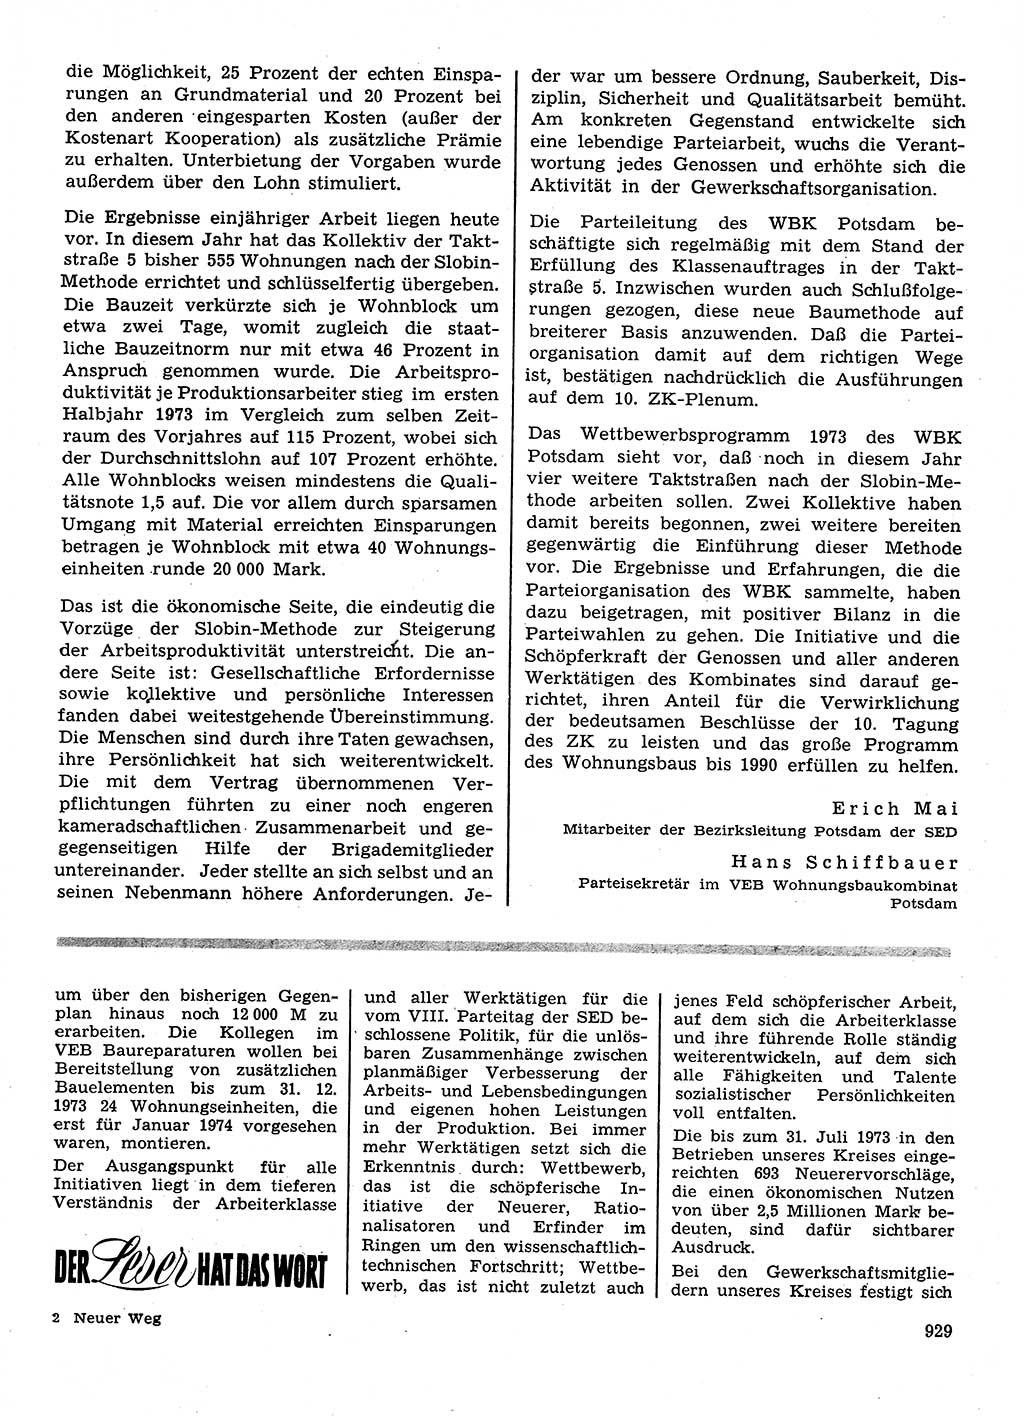 Neuer Weg (NW), Organ des Zentralkomitees (ZK) der SED (Sozialistische Einheitspartei Deutschlands) für Fragen des Parteilebens, 28. Jahrgang [Deutsche Demokratische Republik (DDR)] 1973, Seite 929 (NW ZK SED DDR 1973, S. 929)